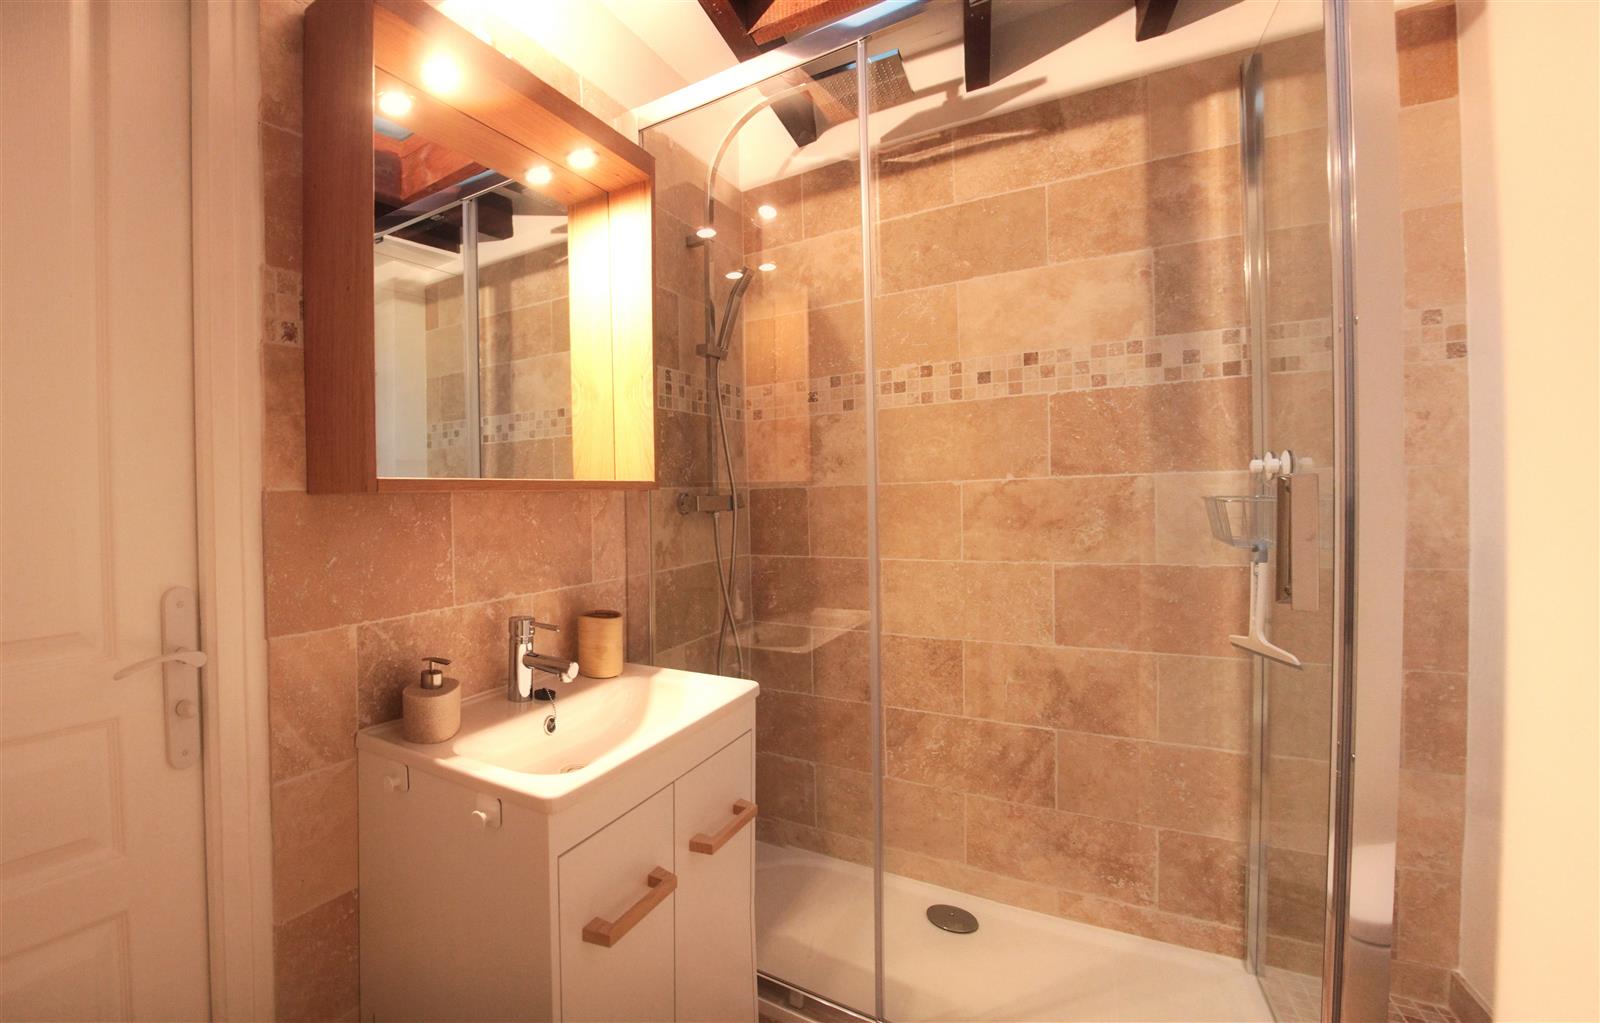 La salle de bain moderne et chaleureuse